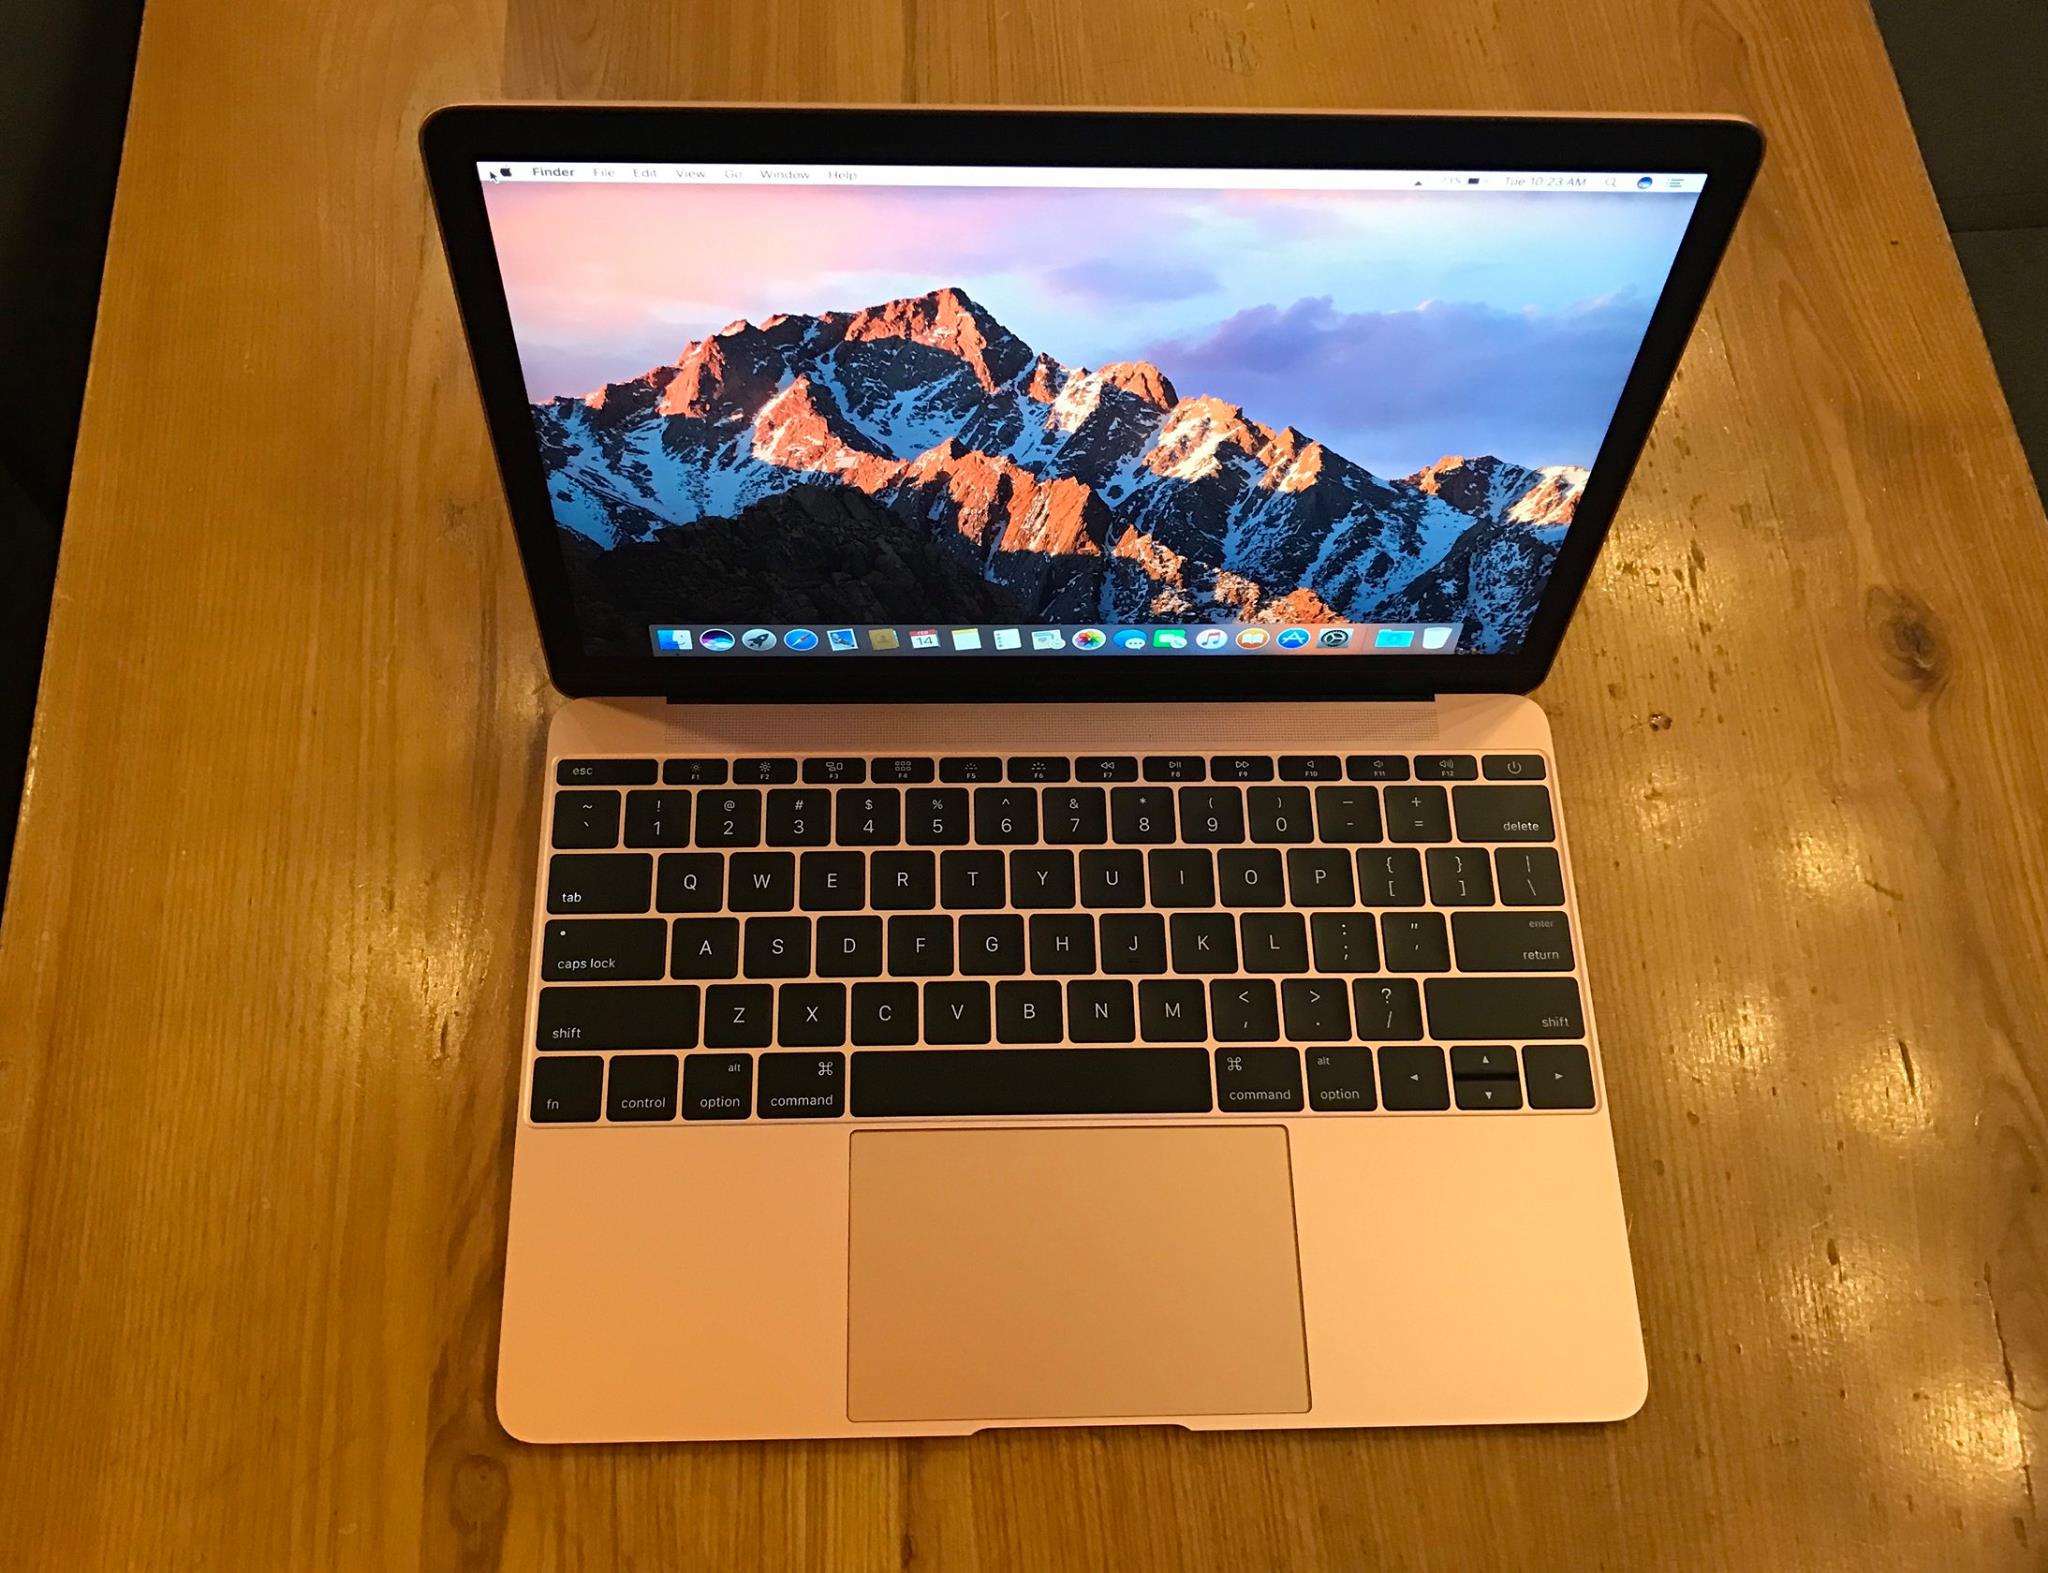 Apple The New Macbook 2016 - MLHA2 ROSE GLOD-9.jpg